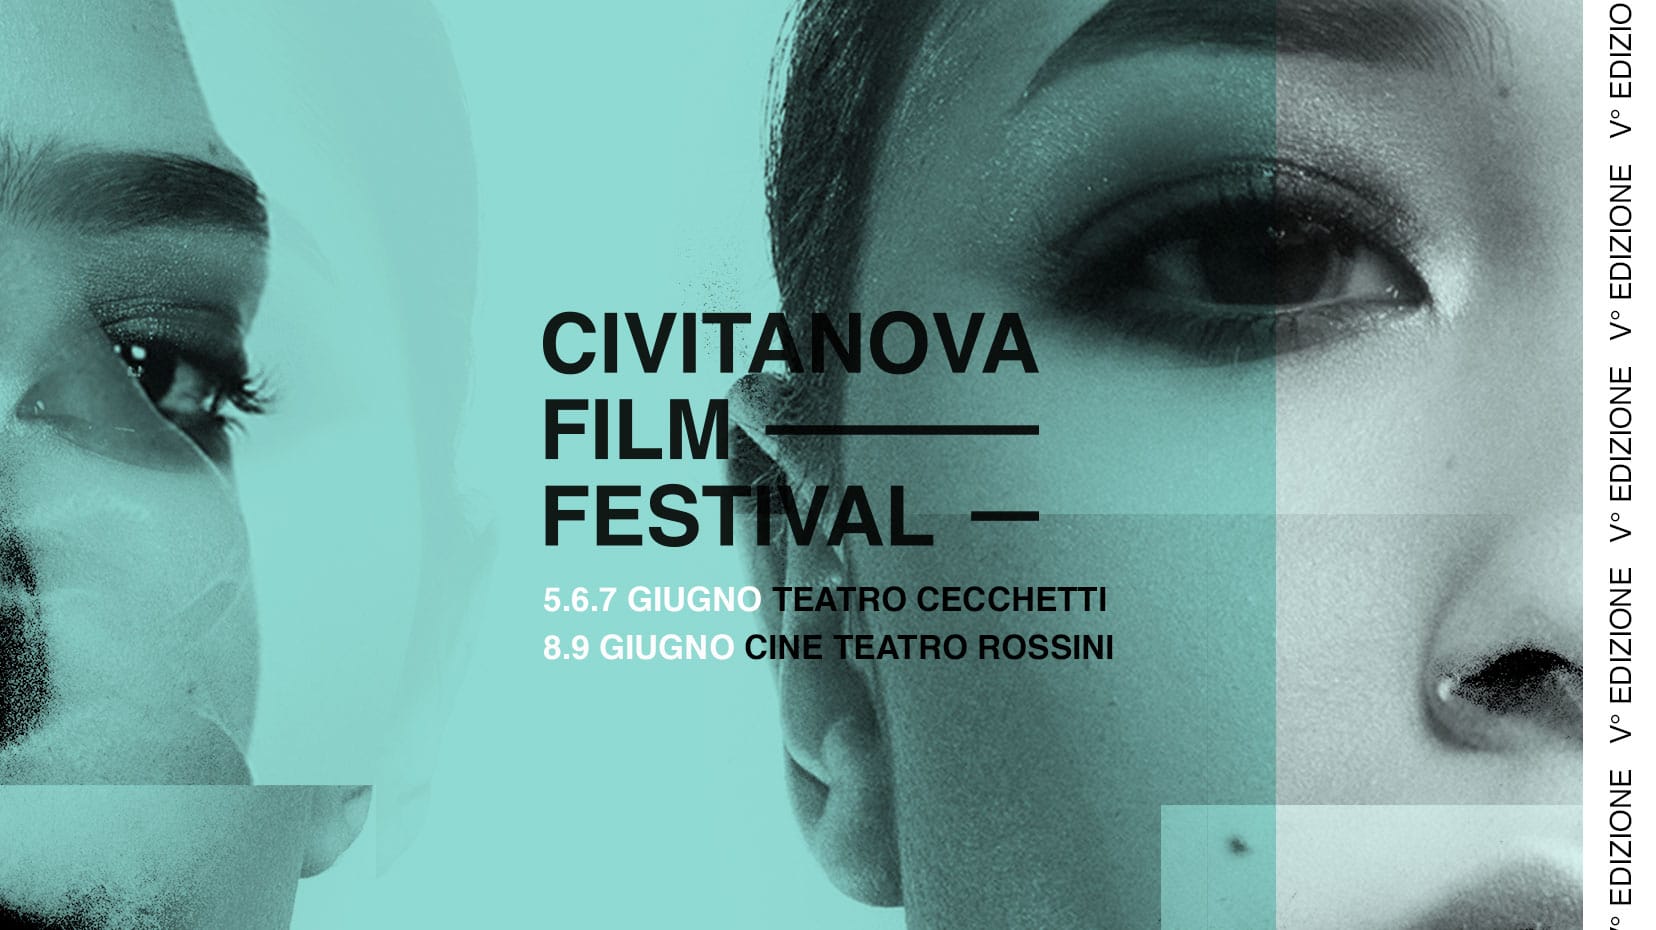 Civitanova Film Festival